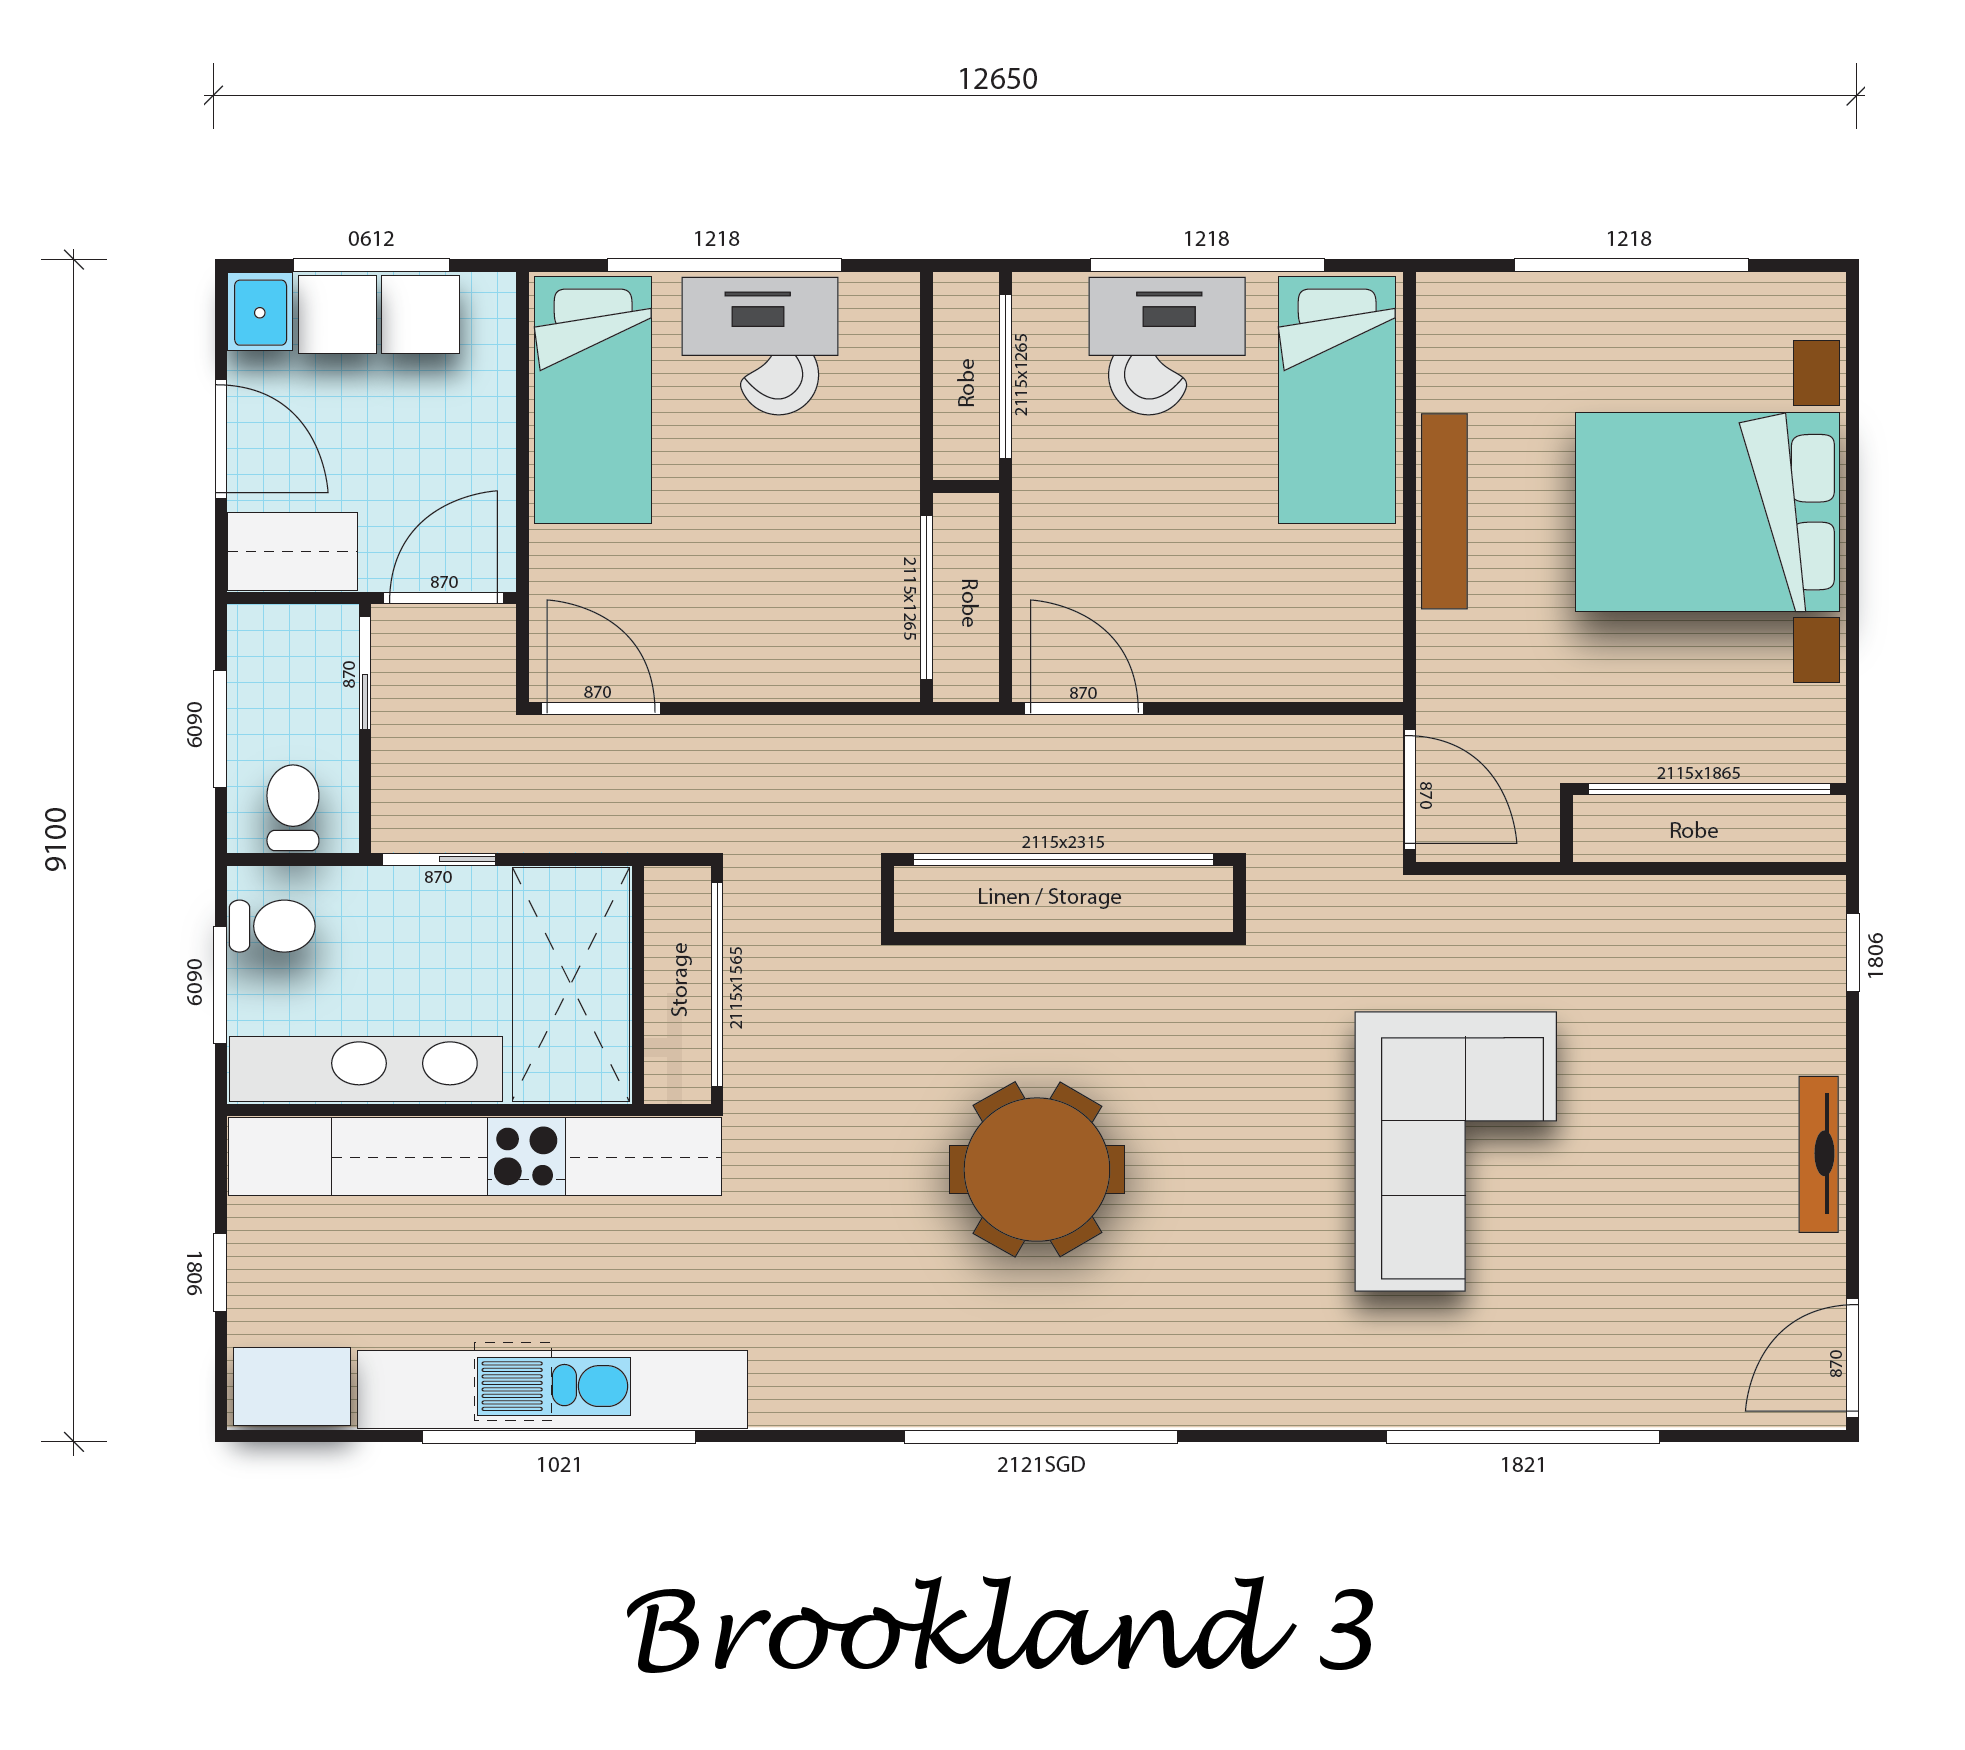 Brookland 3 floorplan image